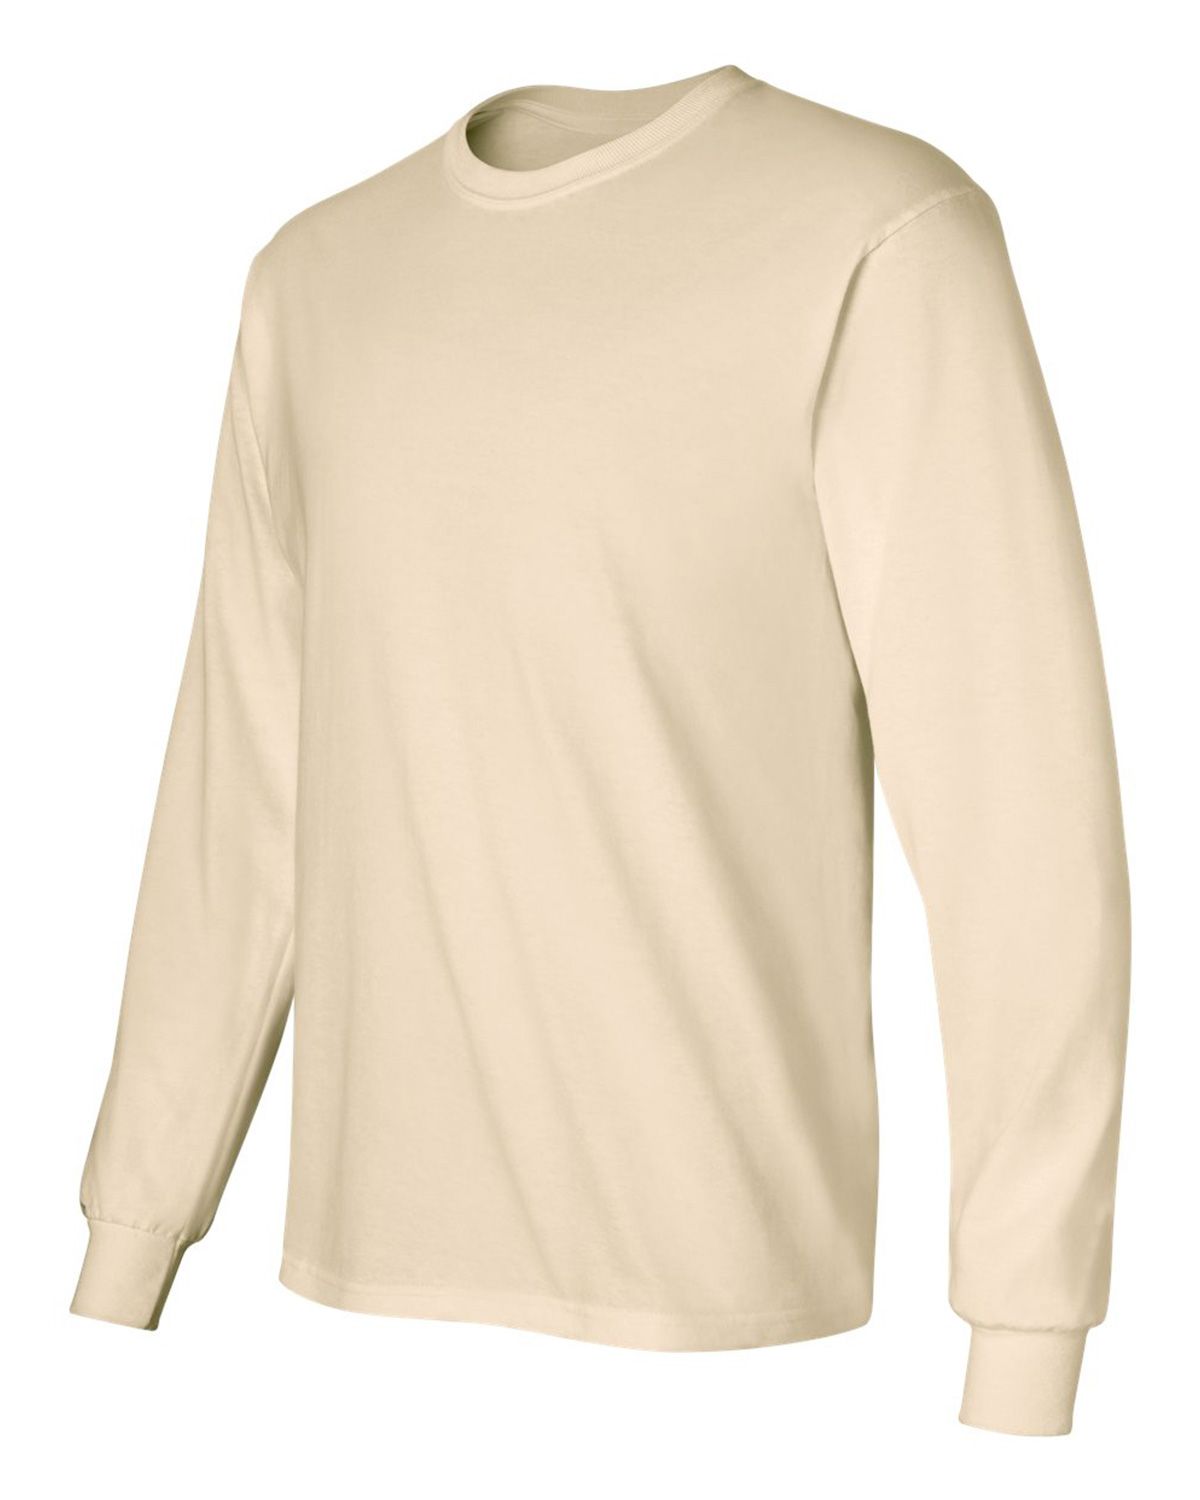 Size Chart for Gildan 2400 Ultra Cotton Long Sleeve T-Shirt